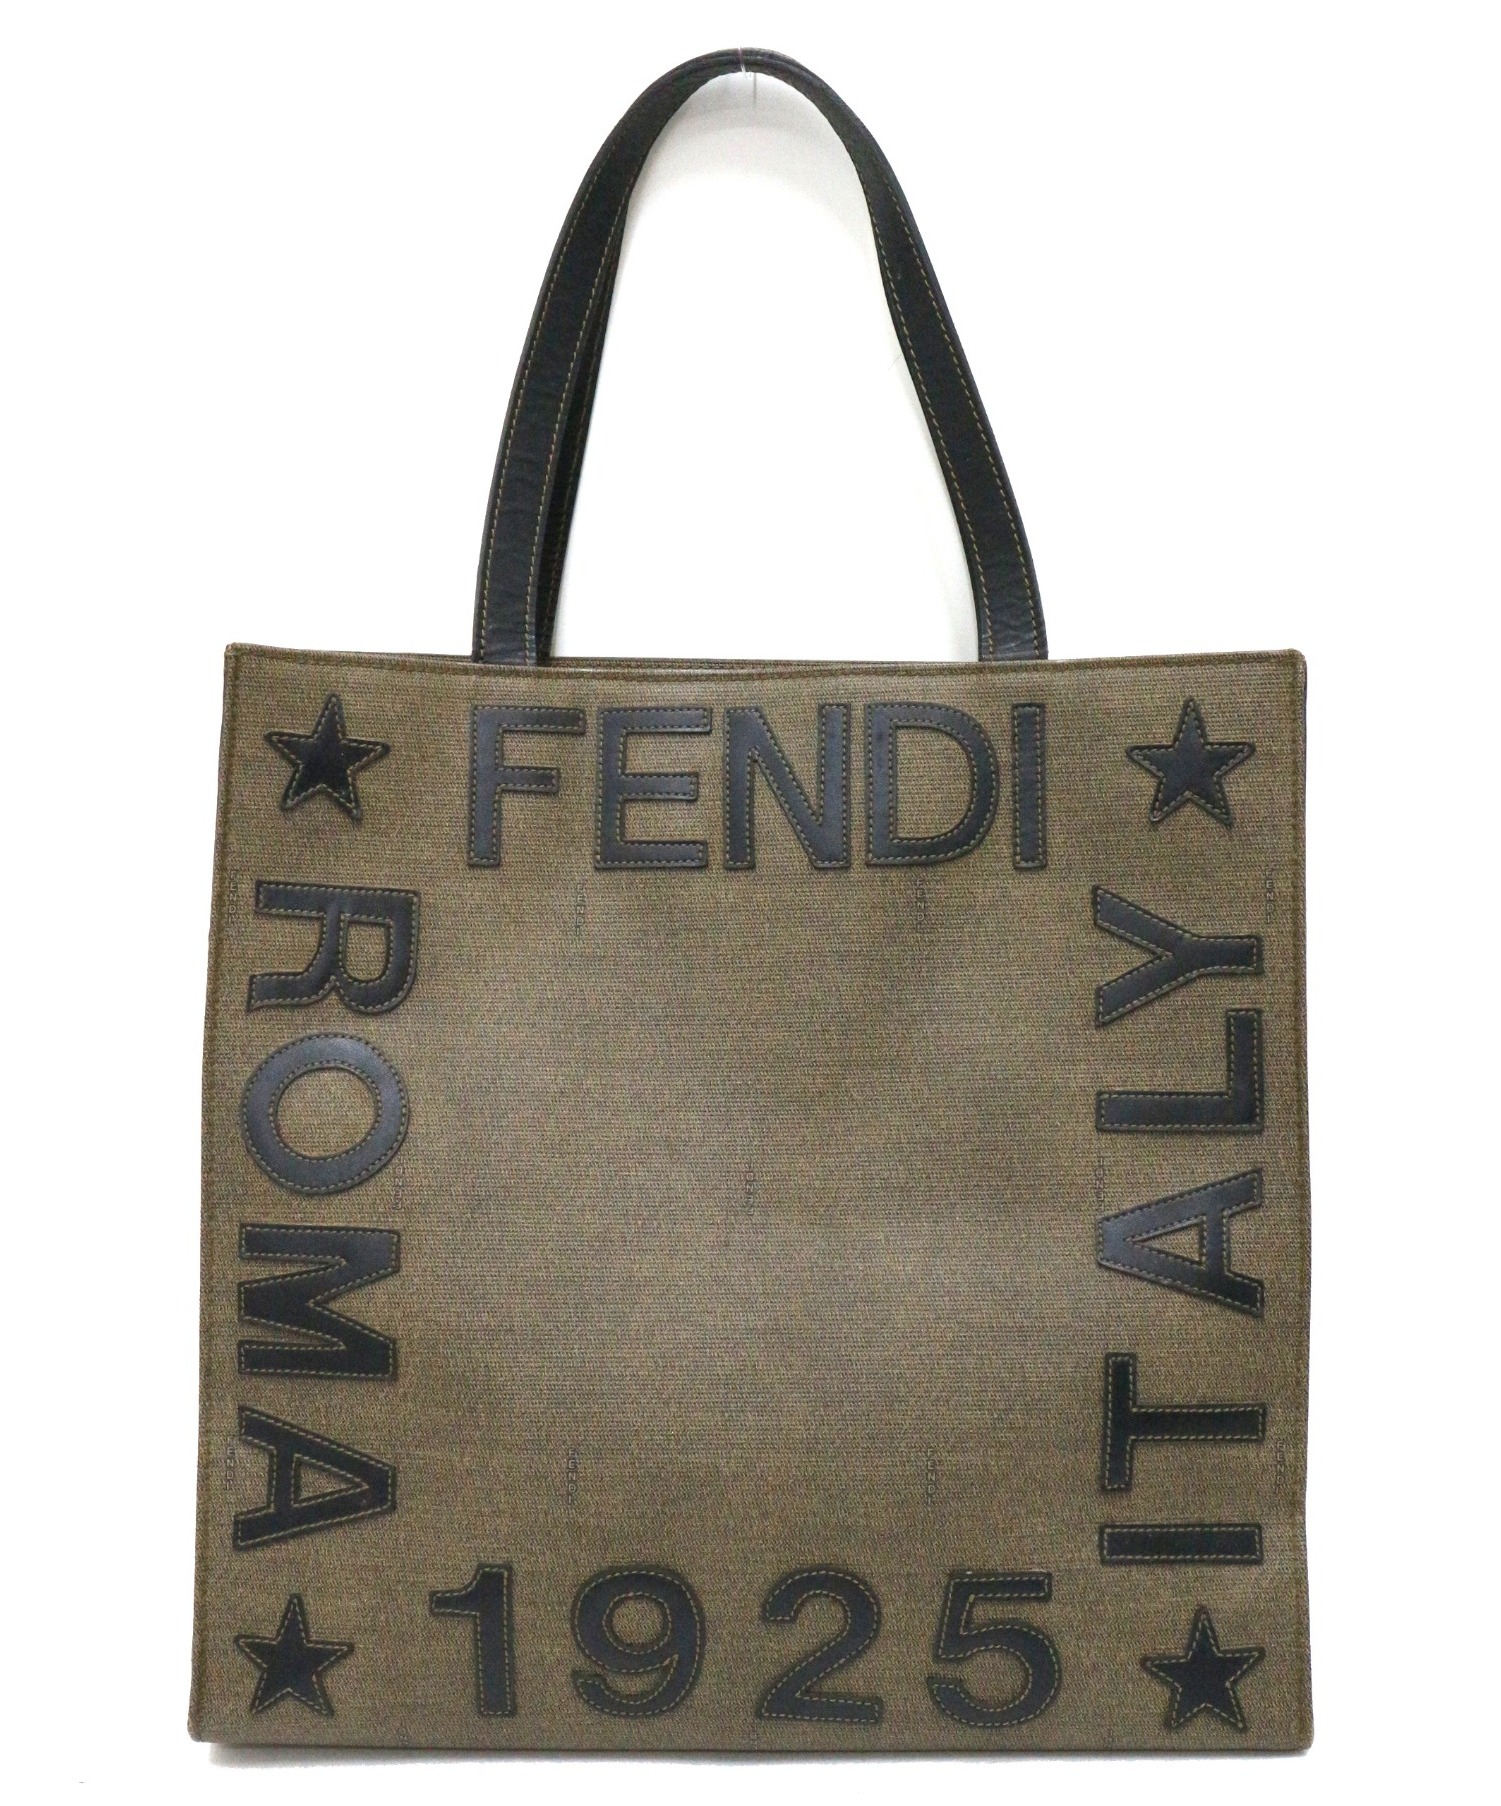 FENDI フェンディ 1925 ROMA トートバッグ ブラウン - トートバッグ